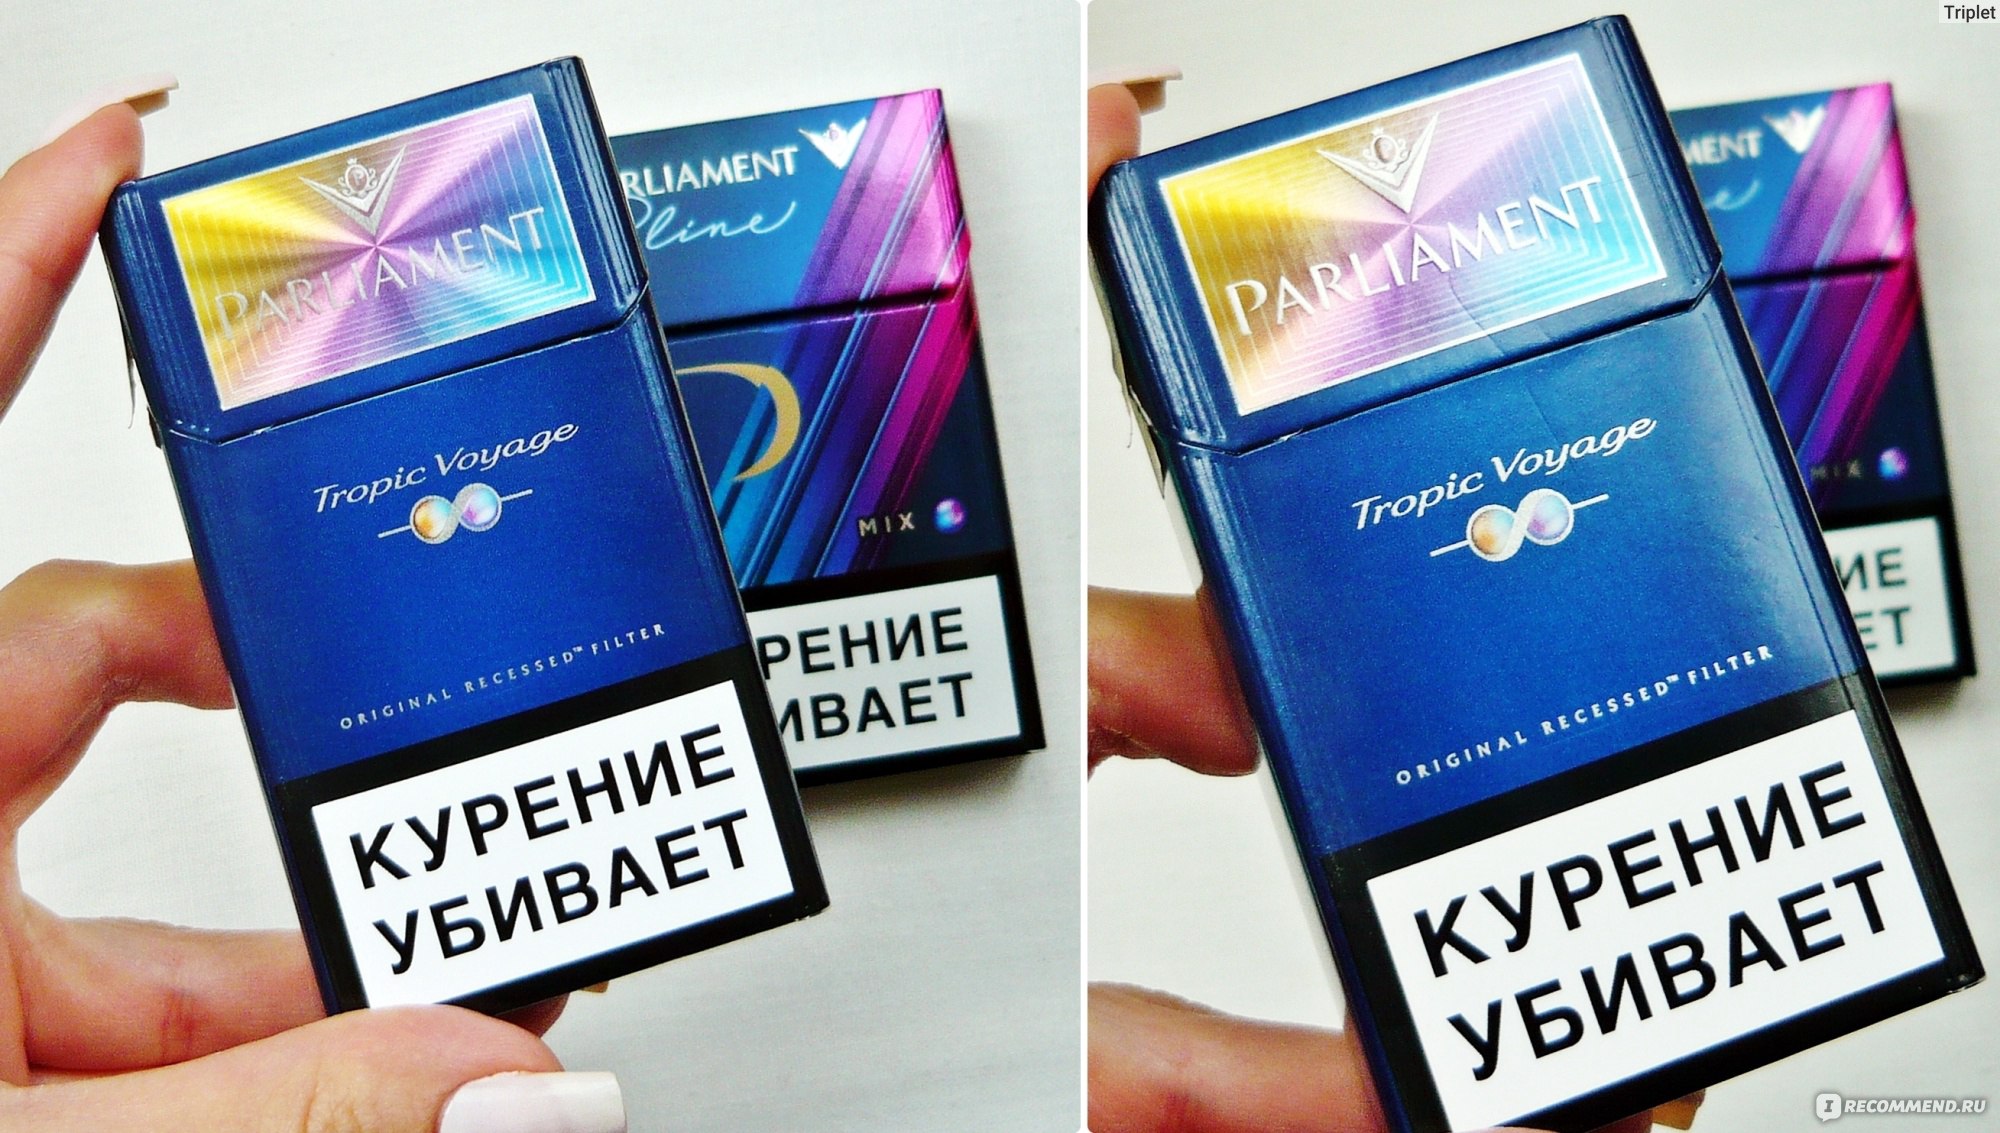 Сигареты Парламент Купить Интернет Магазин